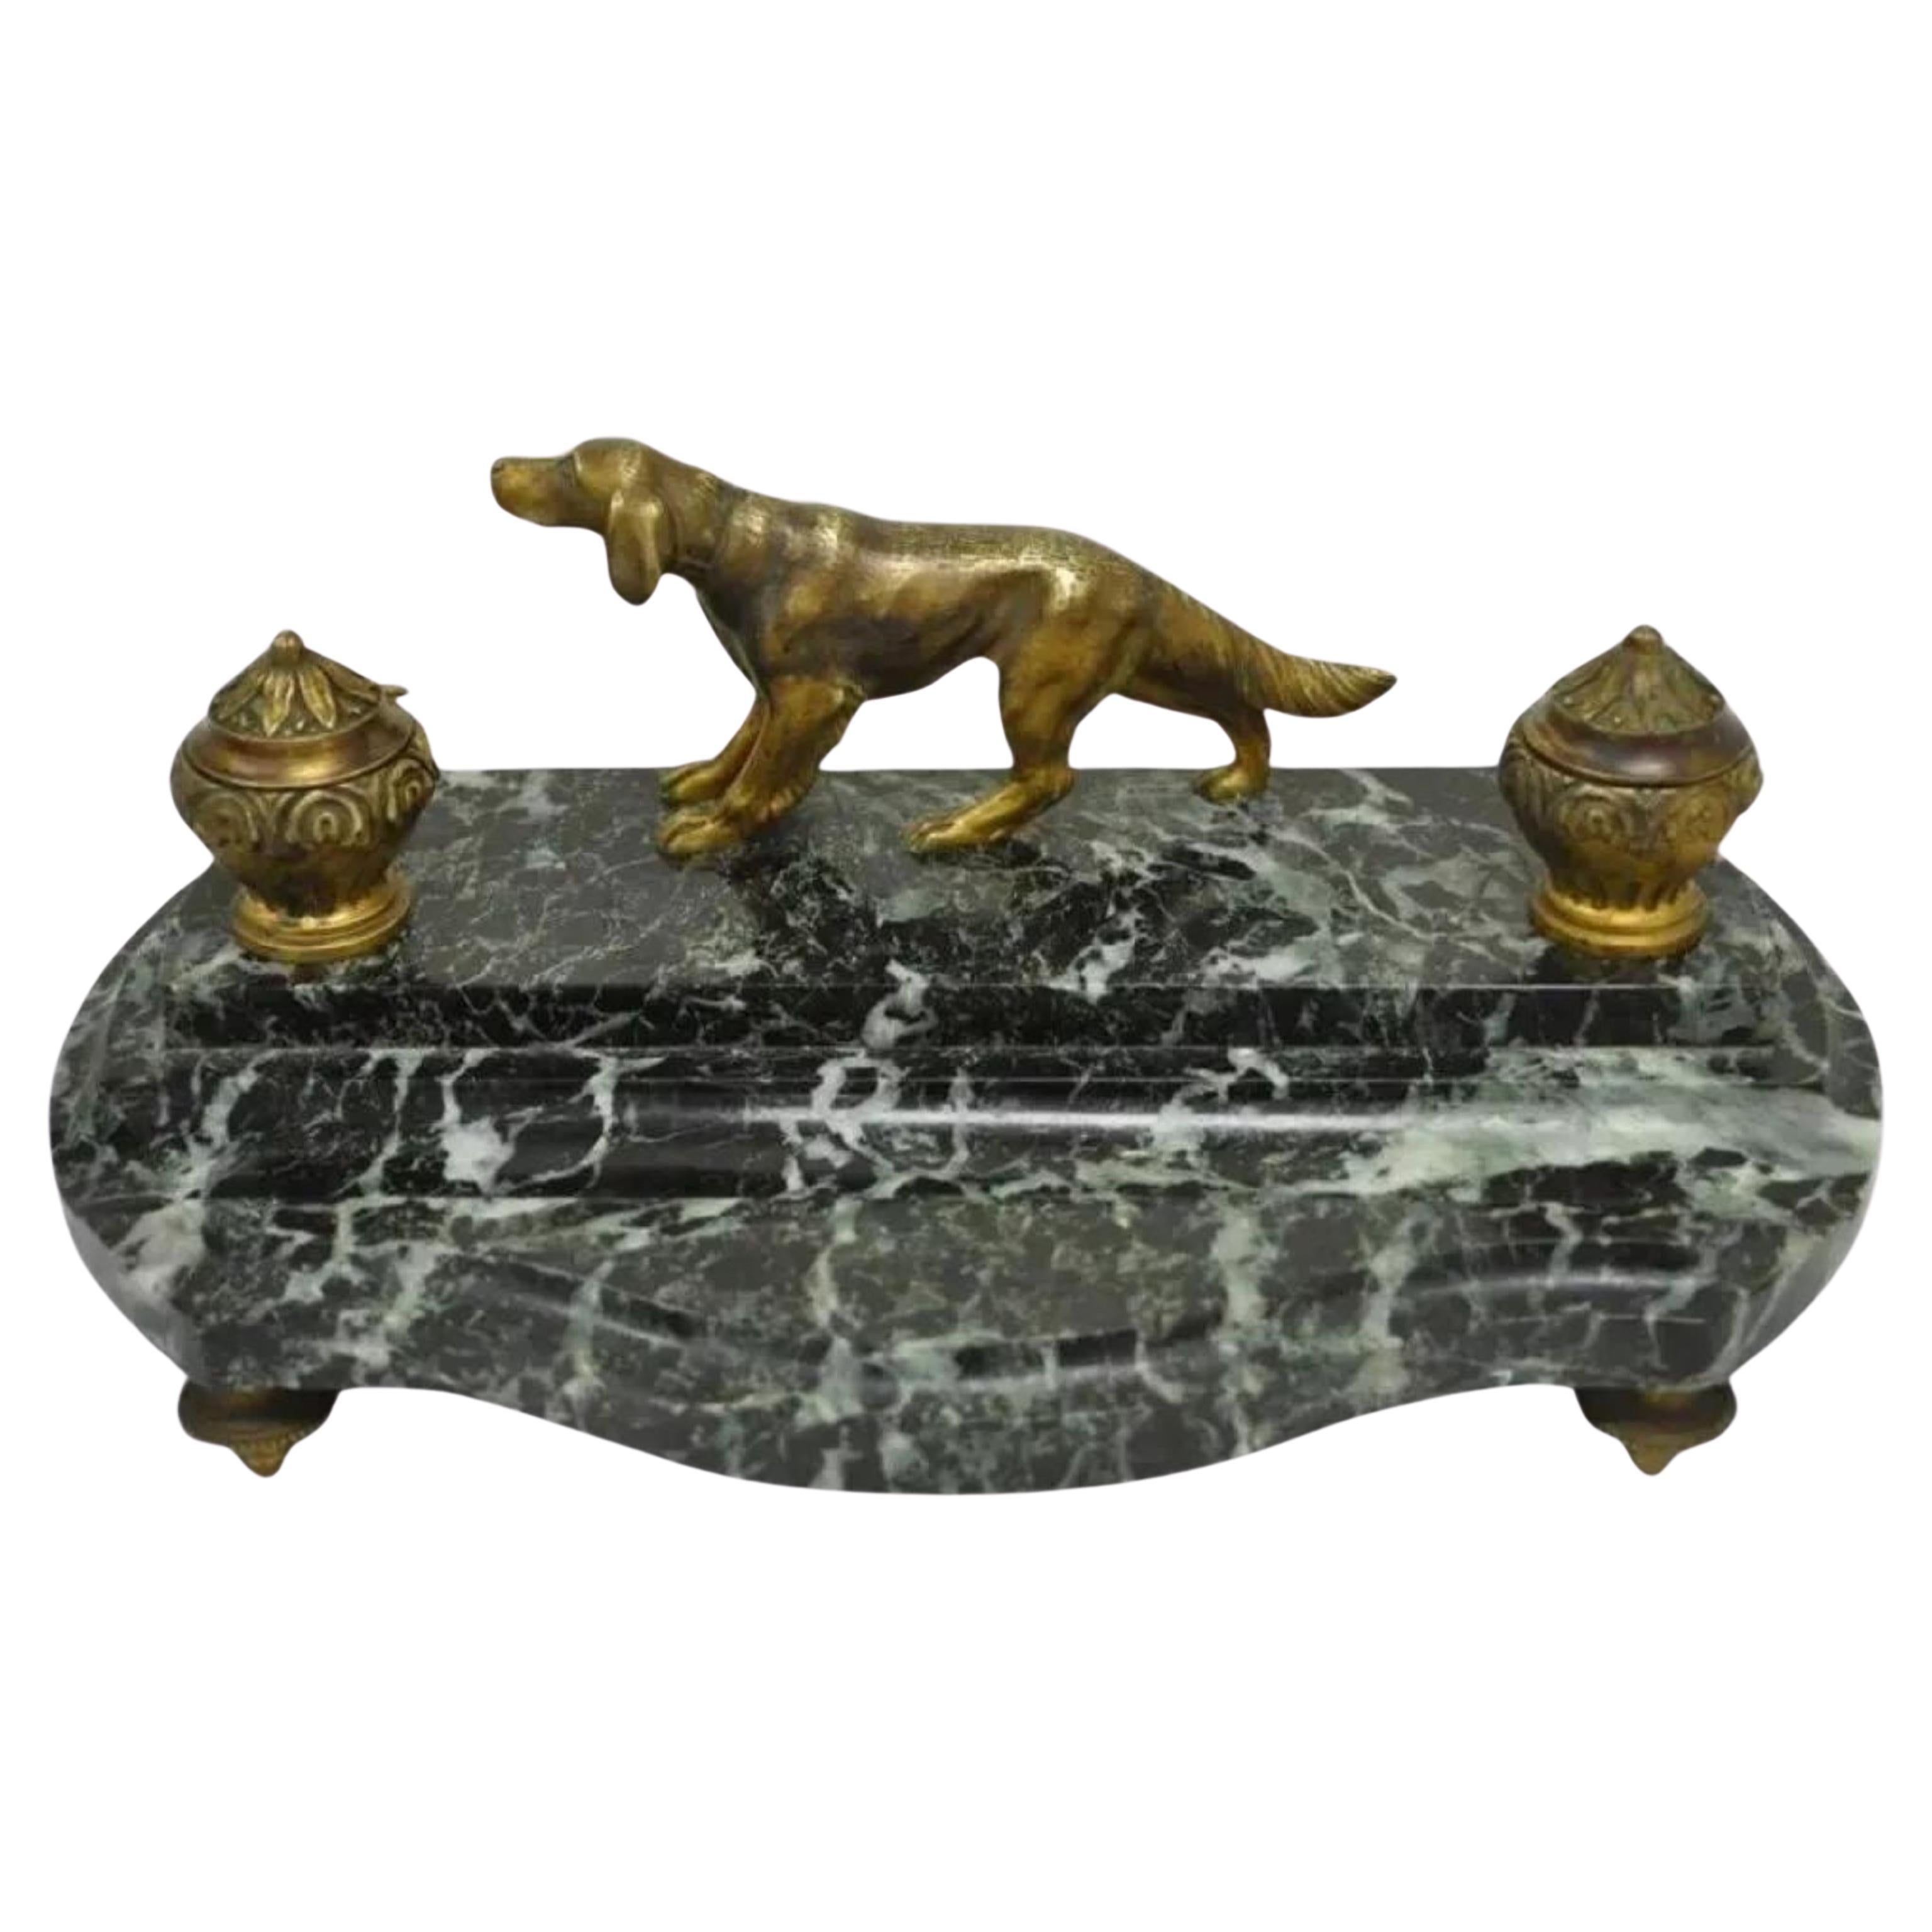 Ancien encrier de bureau de style Empire français figuratif en bronze et marbre avec chien de chasse